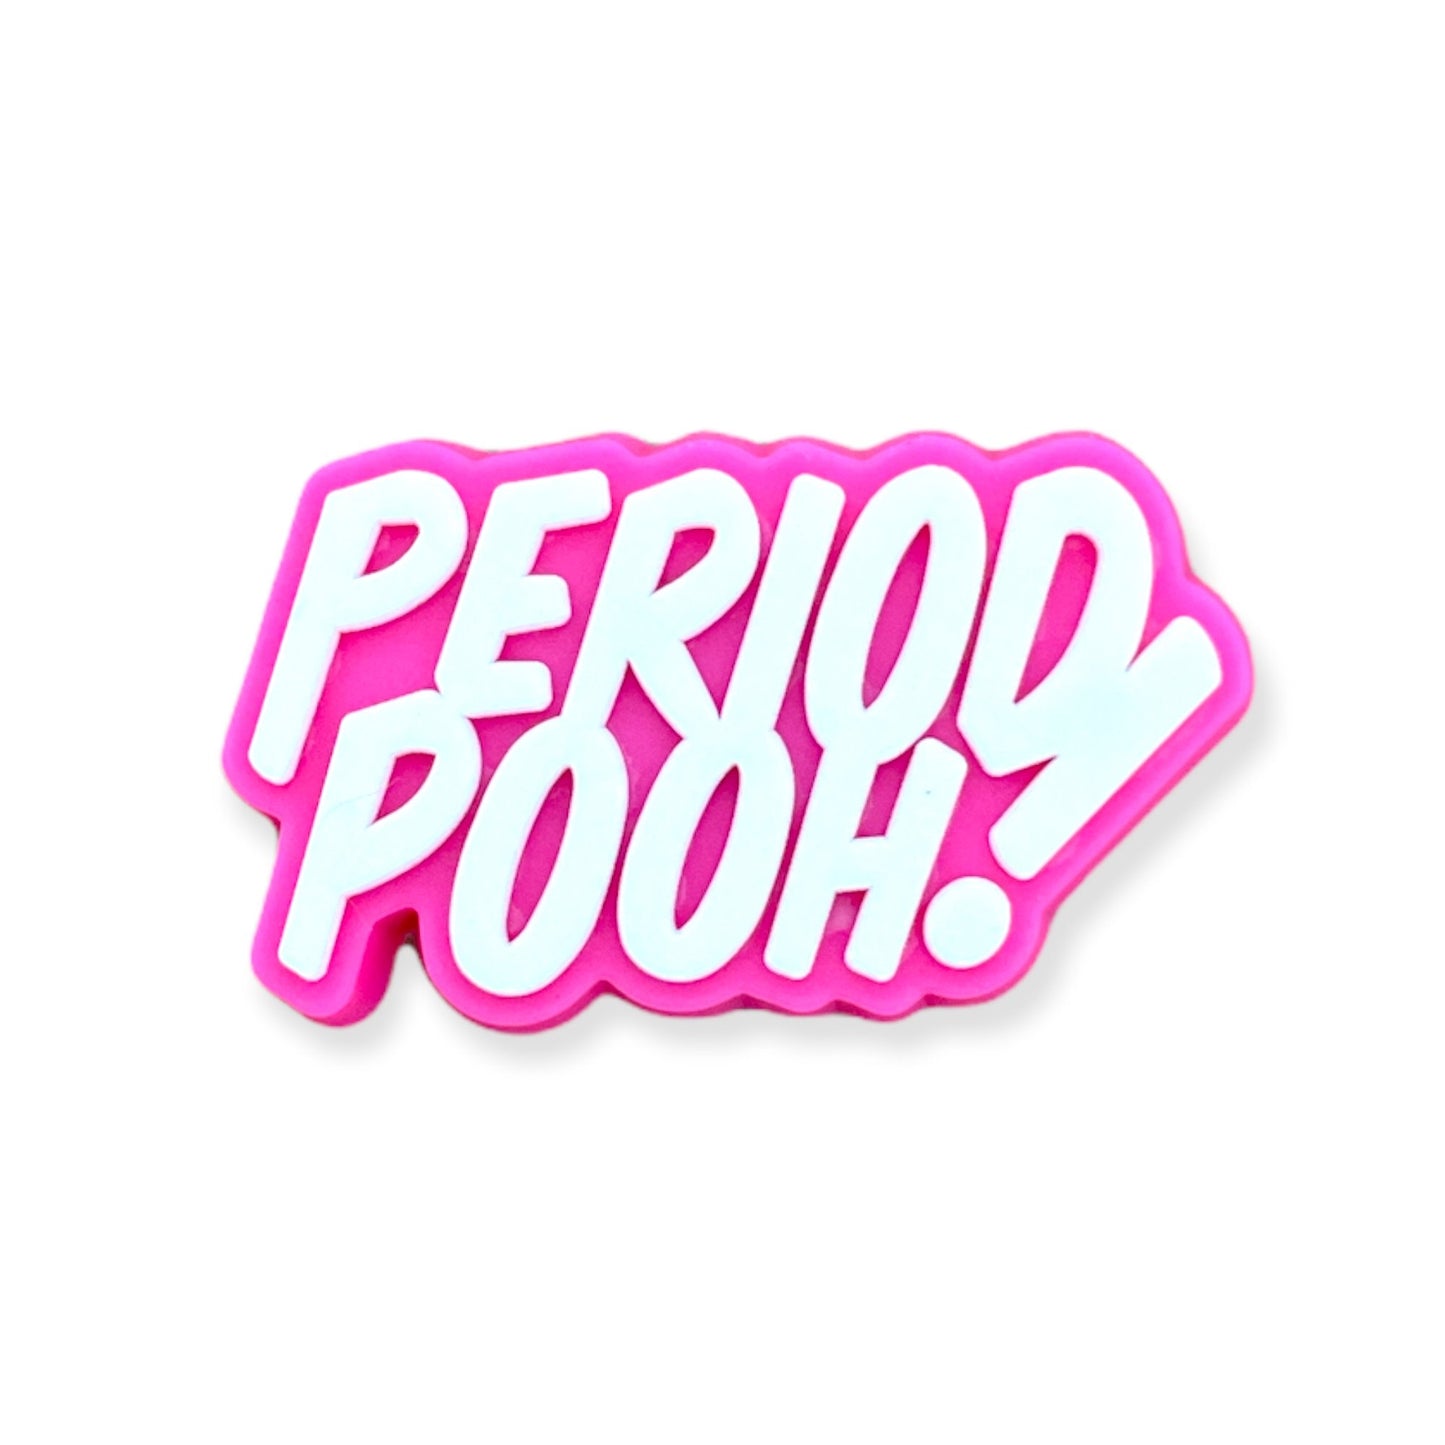 Period Pooh!